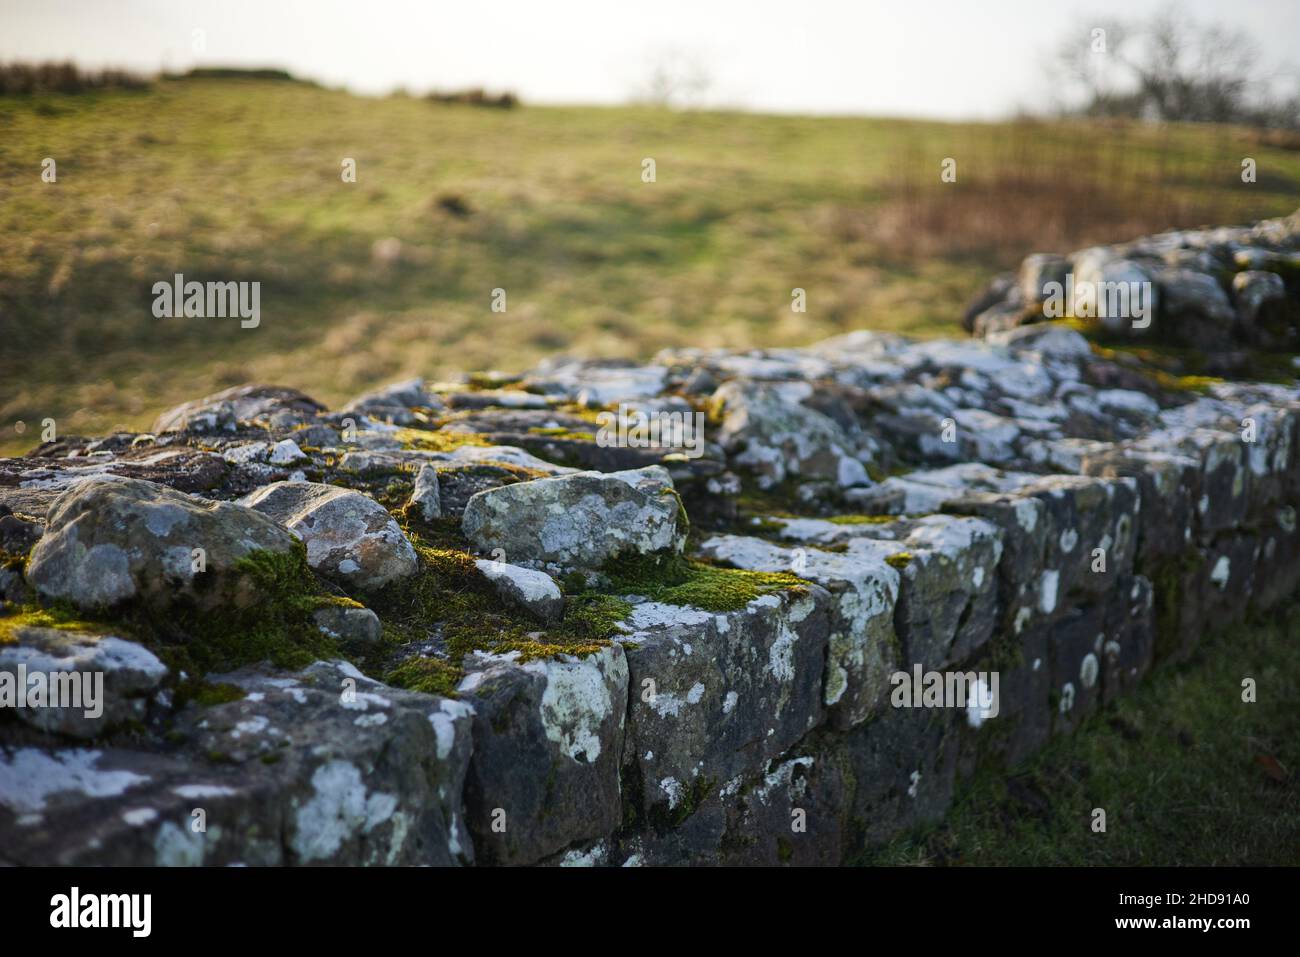 Le mur d'Hadrien, un mur impressionnant construit à travers le haut de l'Angleterre par les Romains Banque D'Images